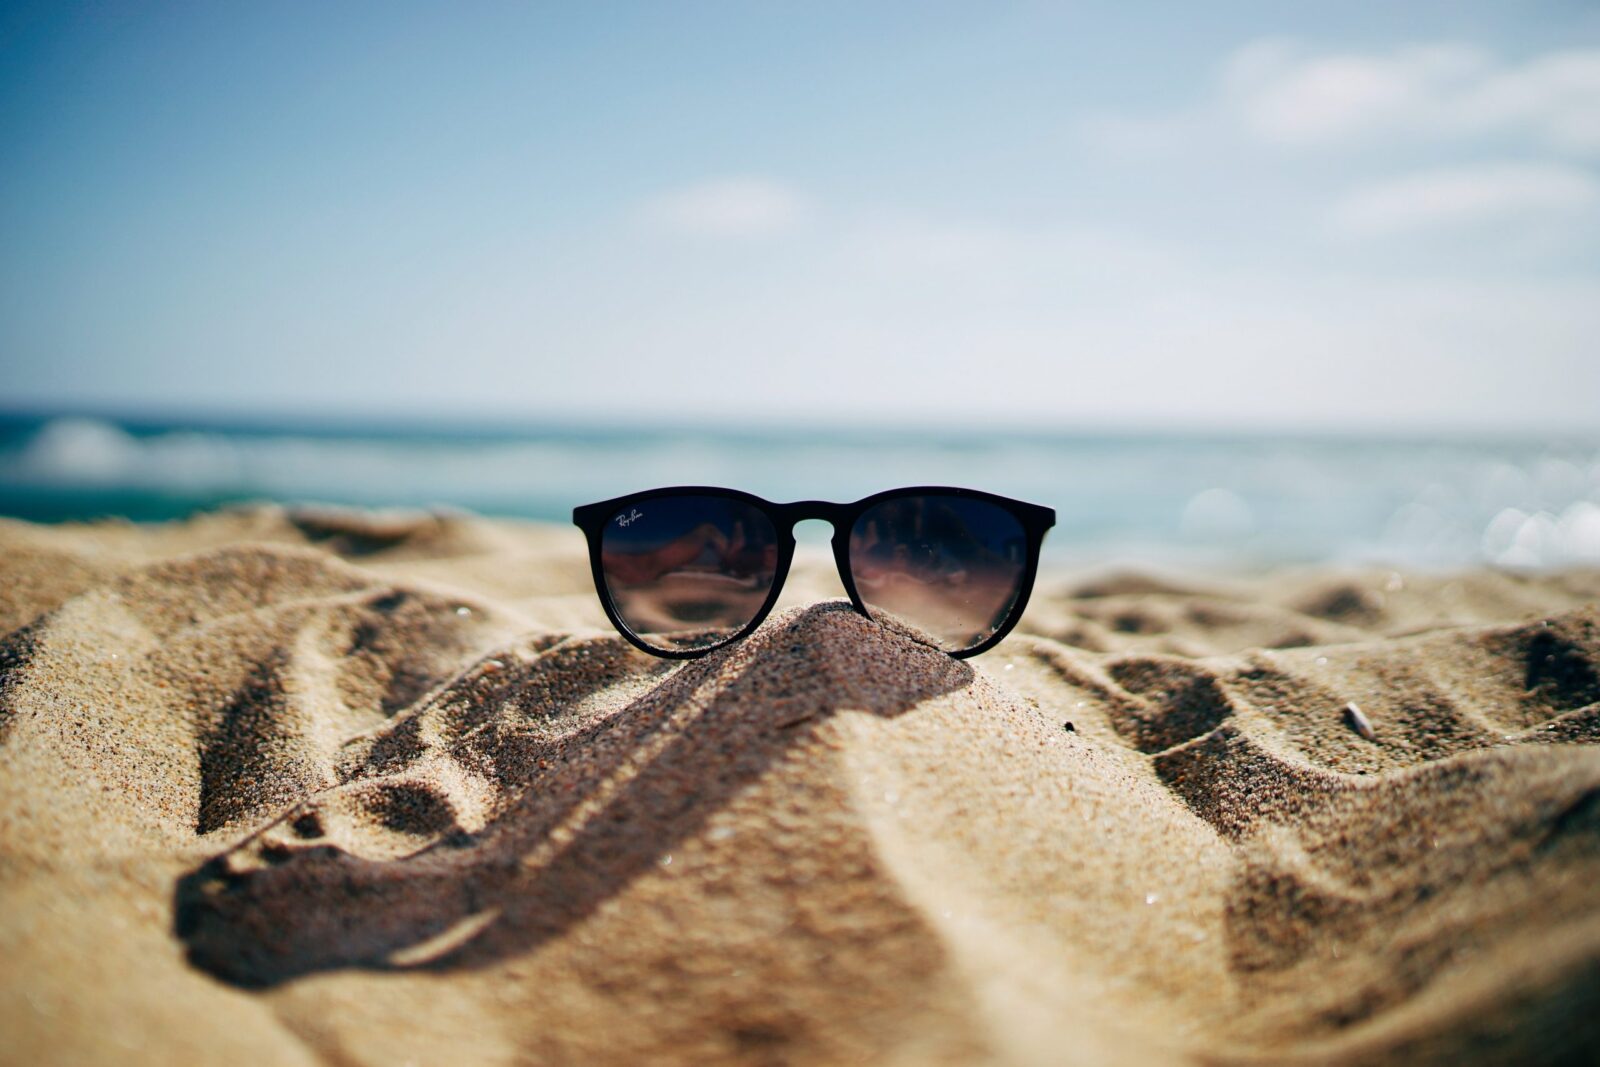 Das Bild zeigt eine Sonnenbrille am Strand im Sand.